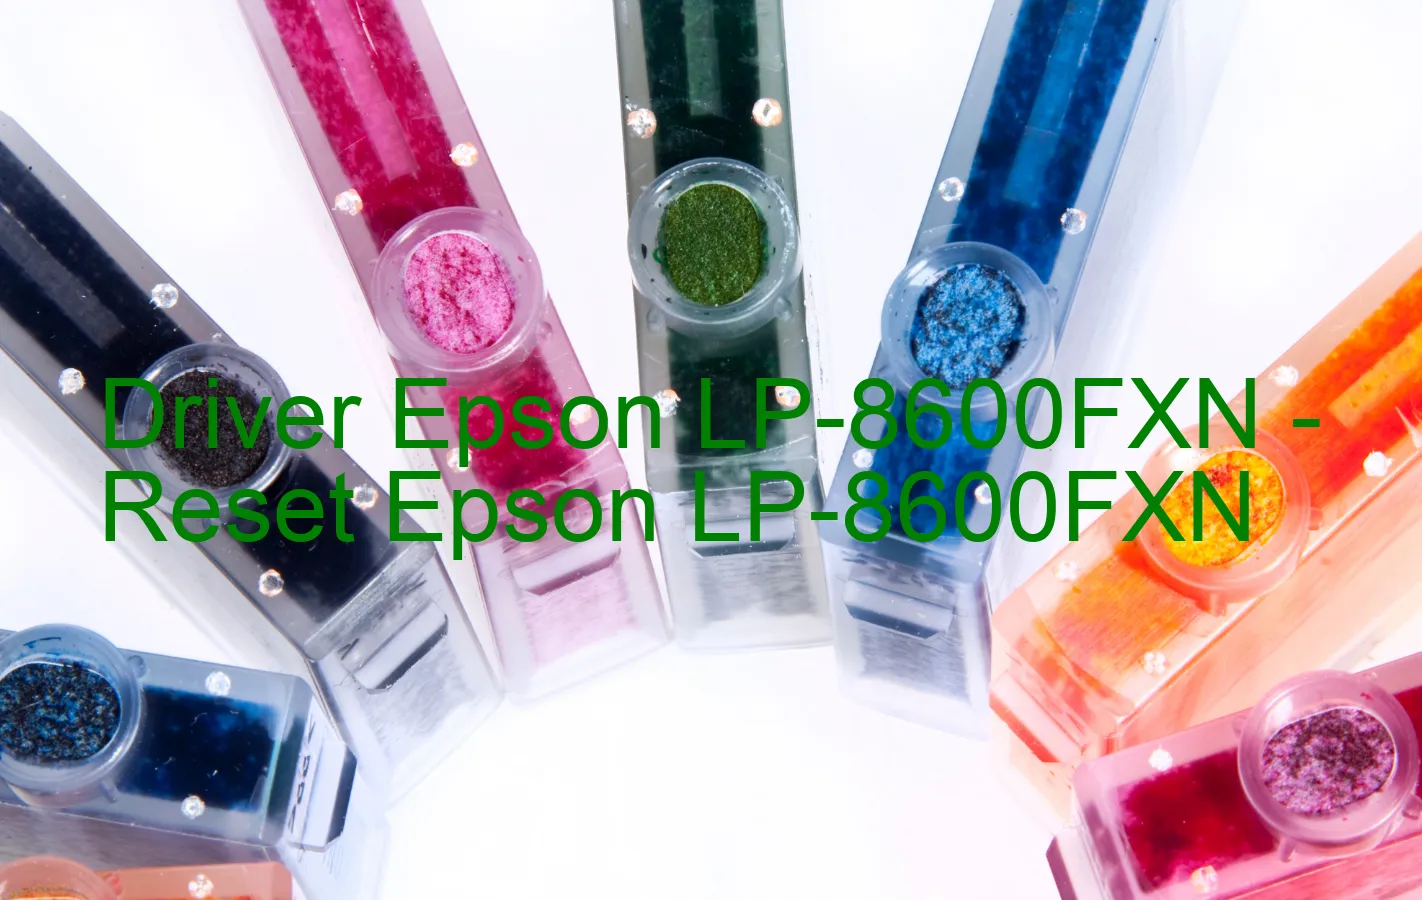 Epson LP-8600FXNのドライバー、Epson LP-8600FXNのリセットソフトウェア